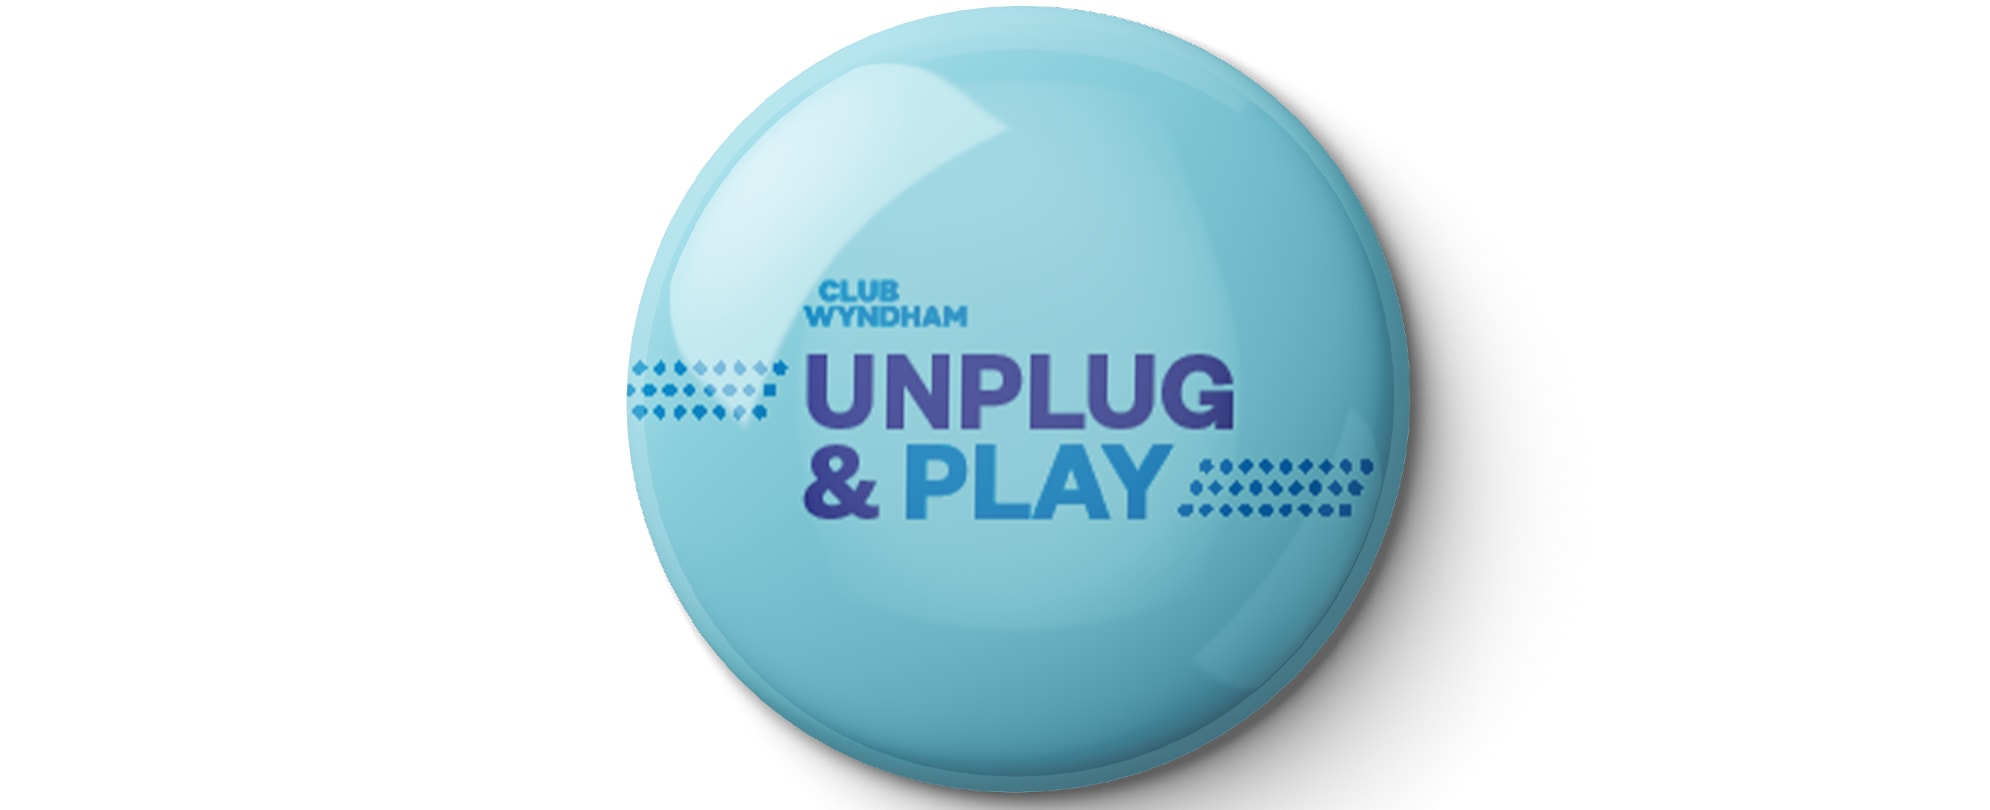 A Club Wyndham Pinspiration "Unplug & Play" pin.